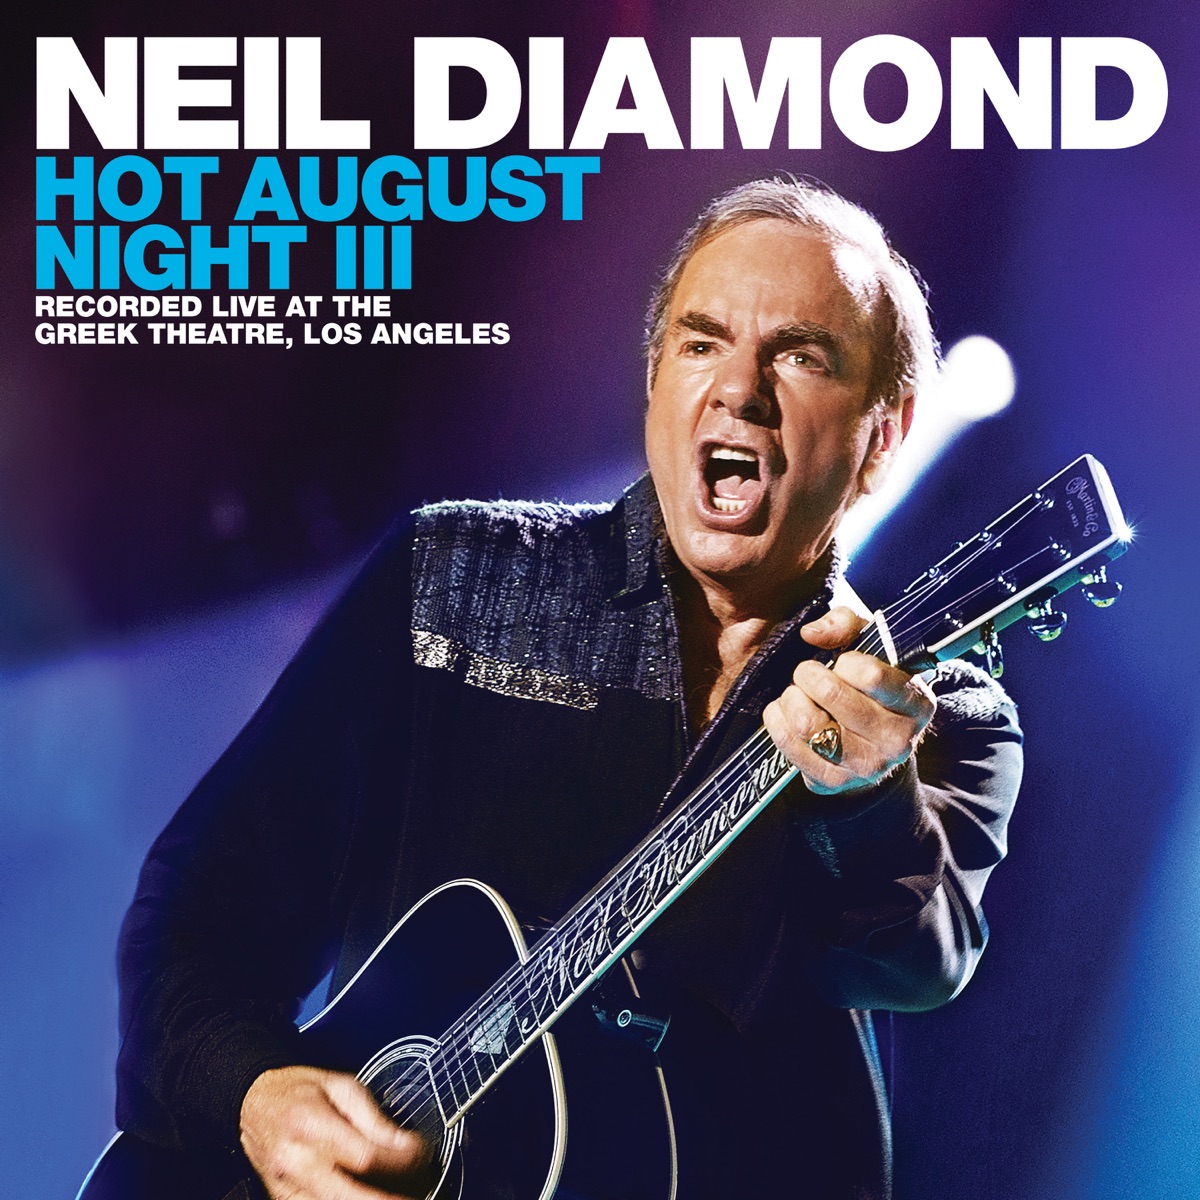 Gold (Live At The Troubadour)  Álbum de Neil Diamond 